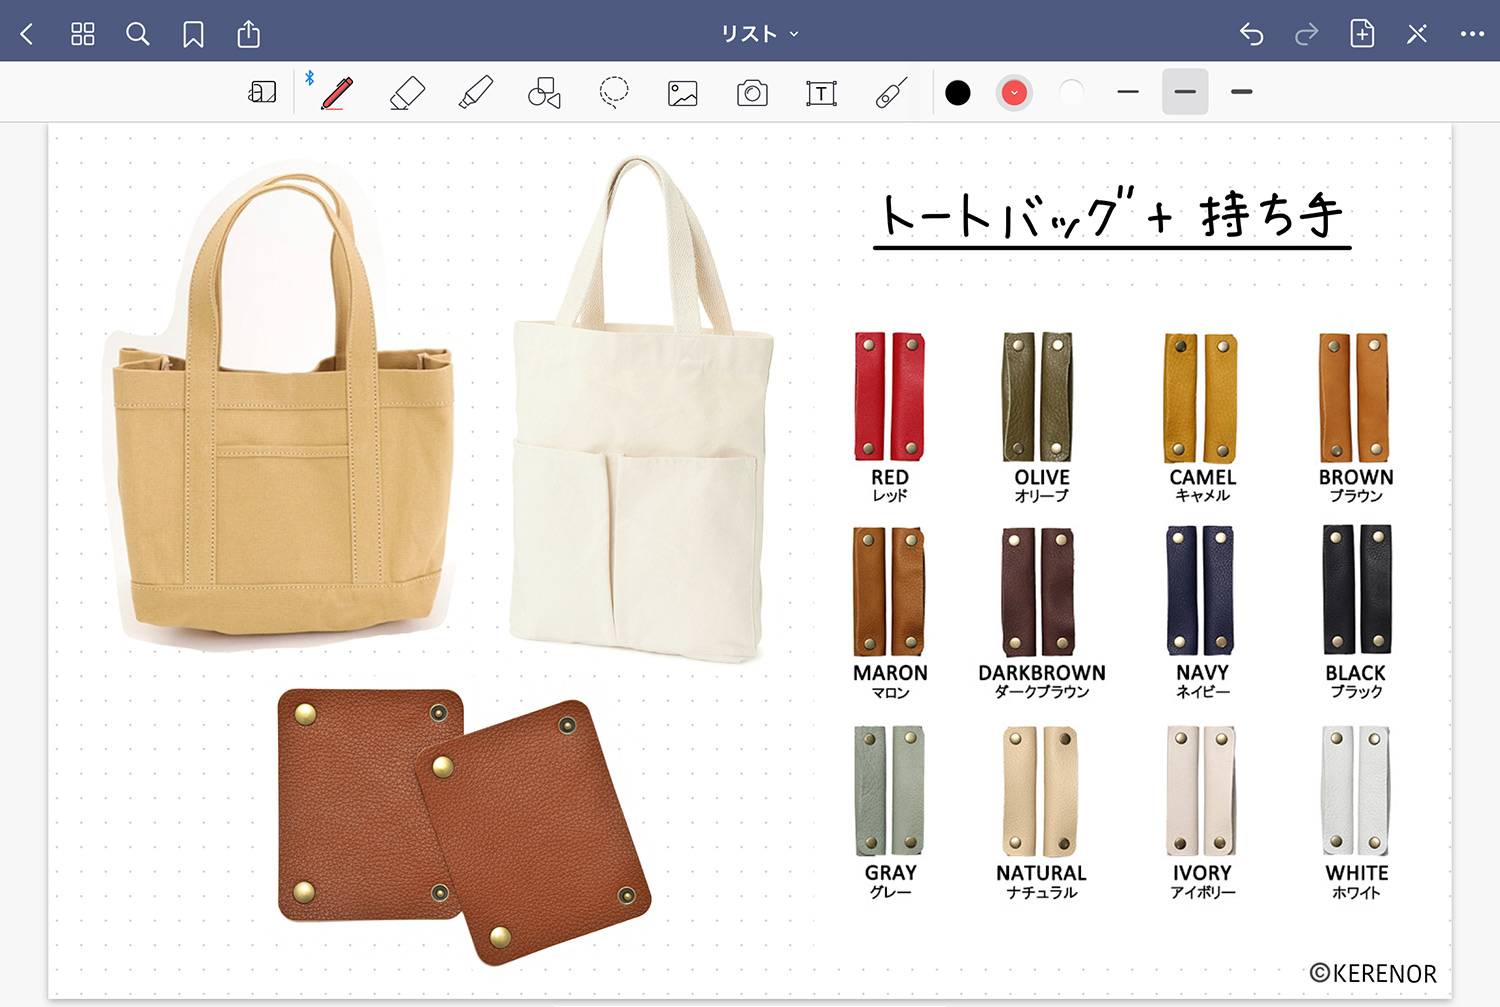 ノートアプリ 「GoodNotes 5」で視覚的に商品を比較する - バッグと持ち手の組み合わせを考える